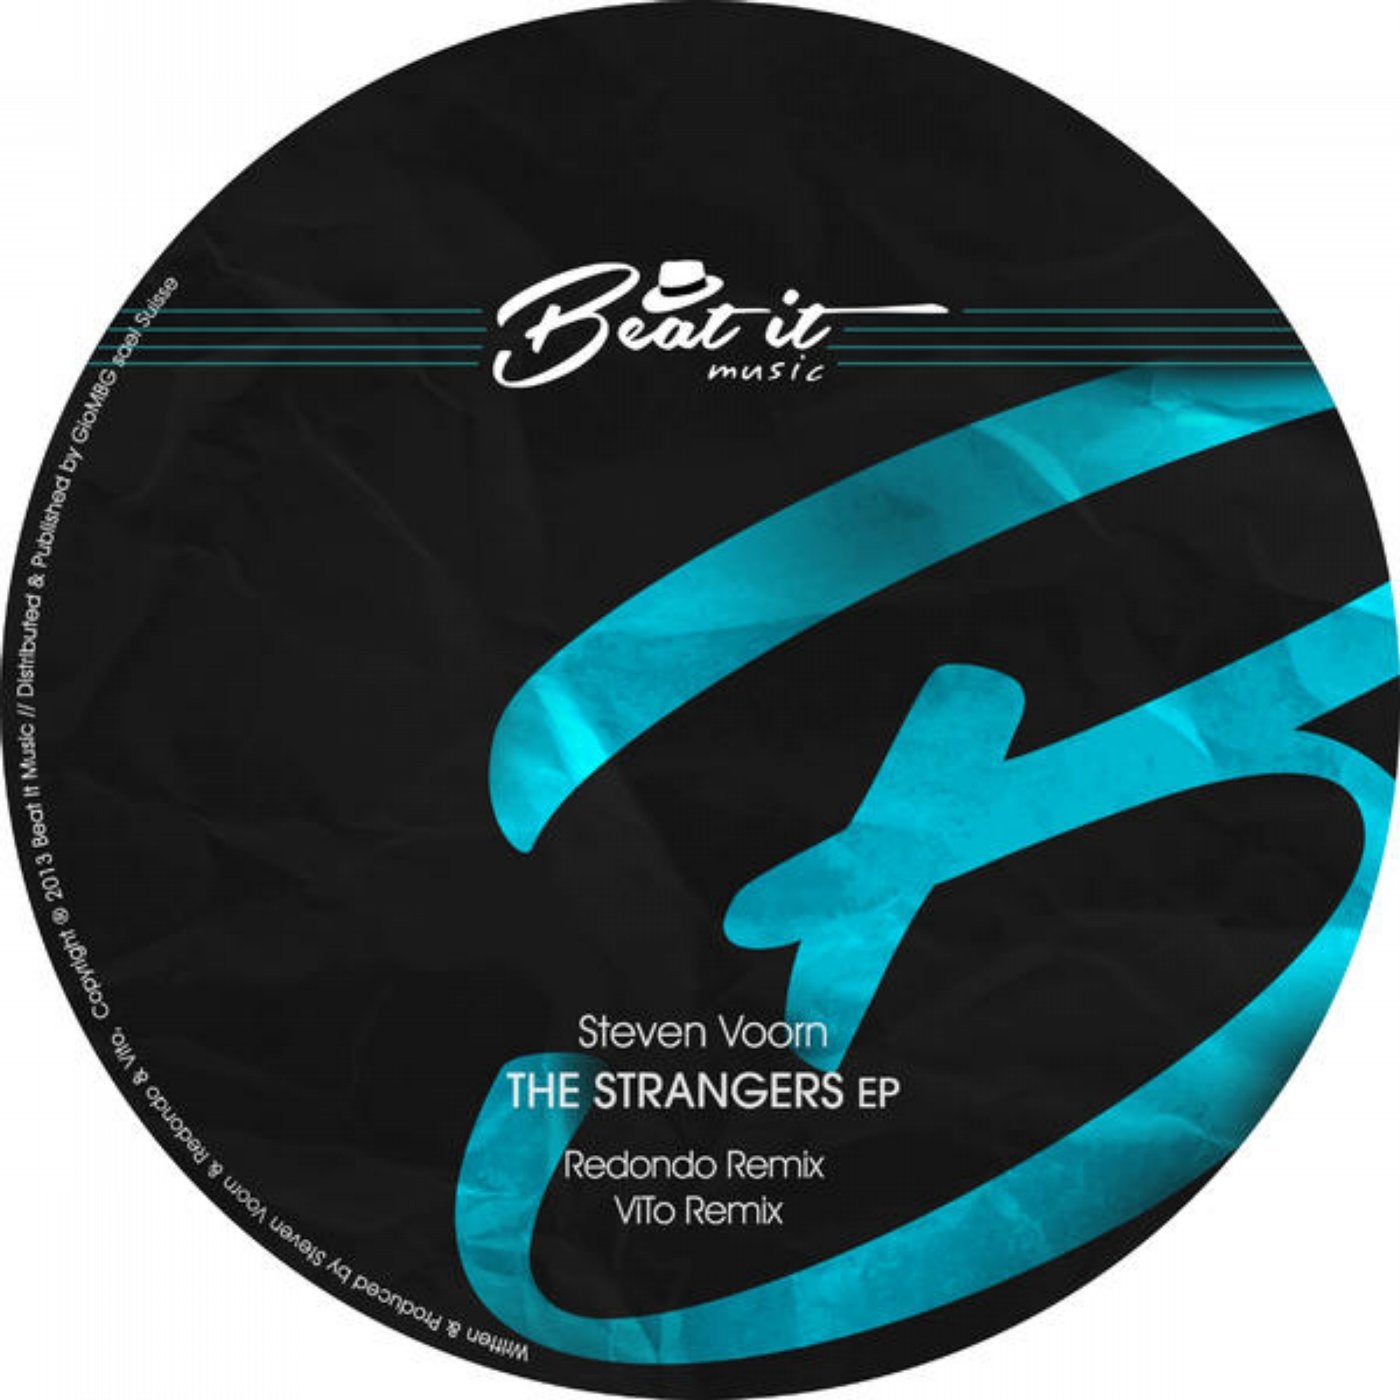 The Strangers Ep